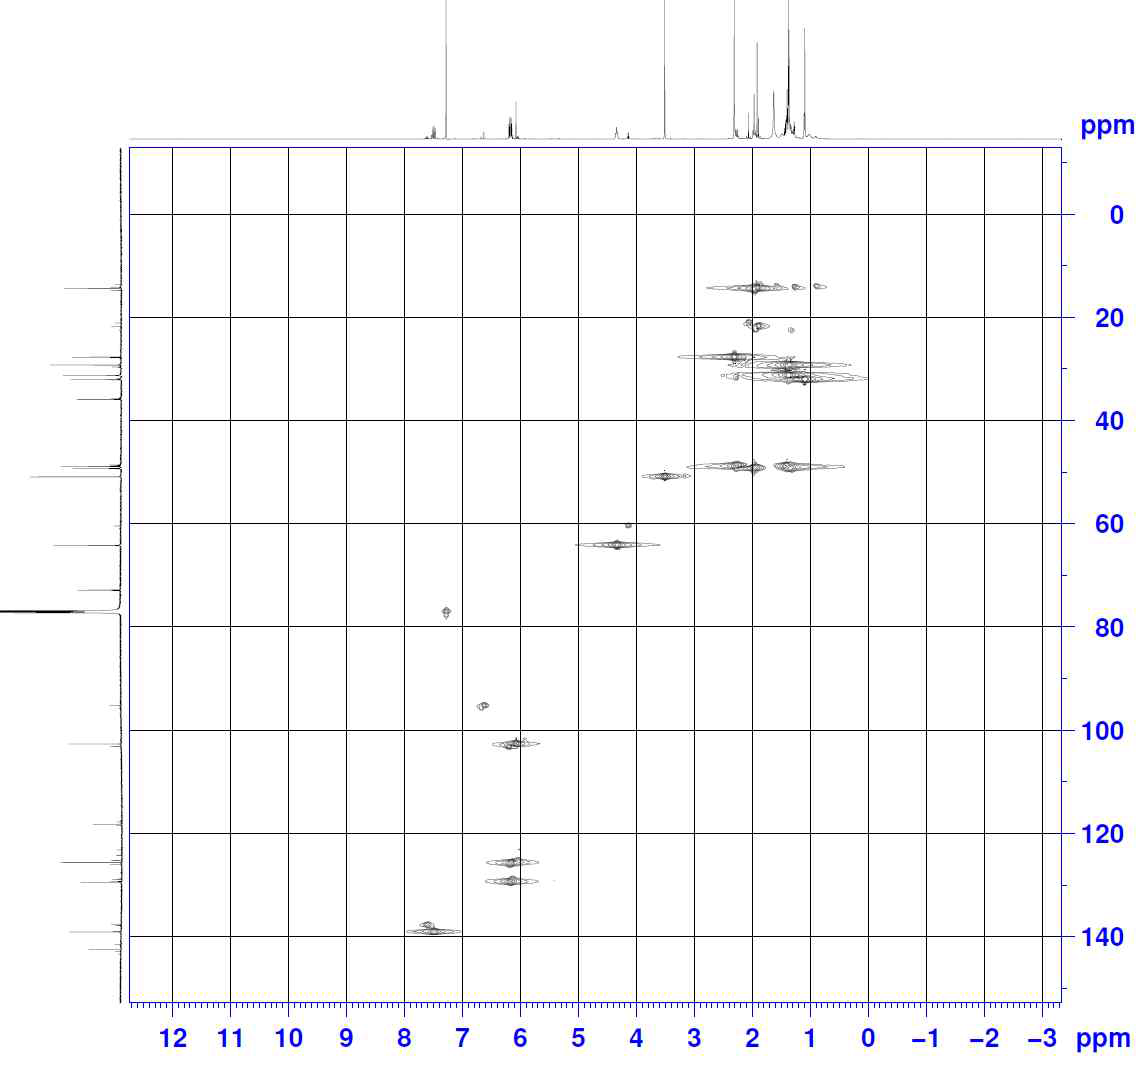 HSQC spectrum of compound 18